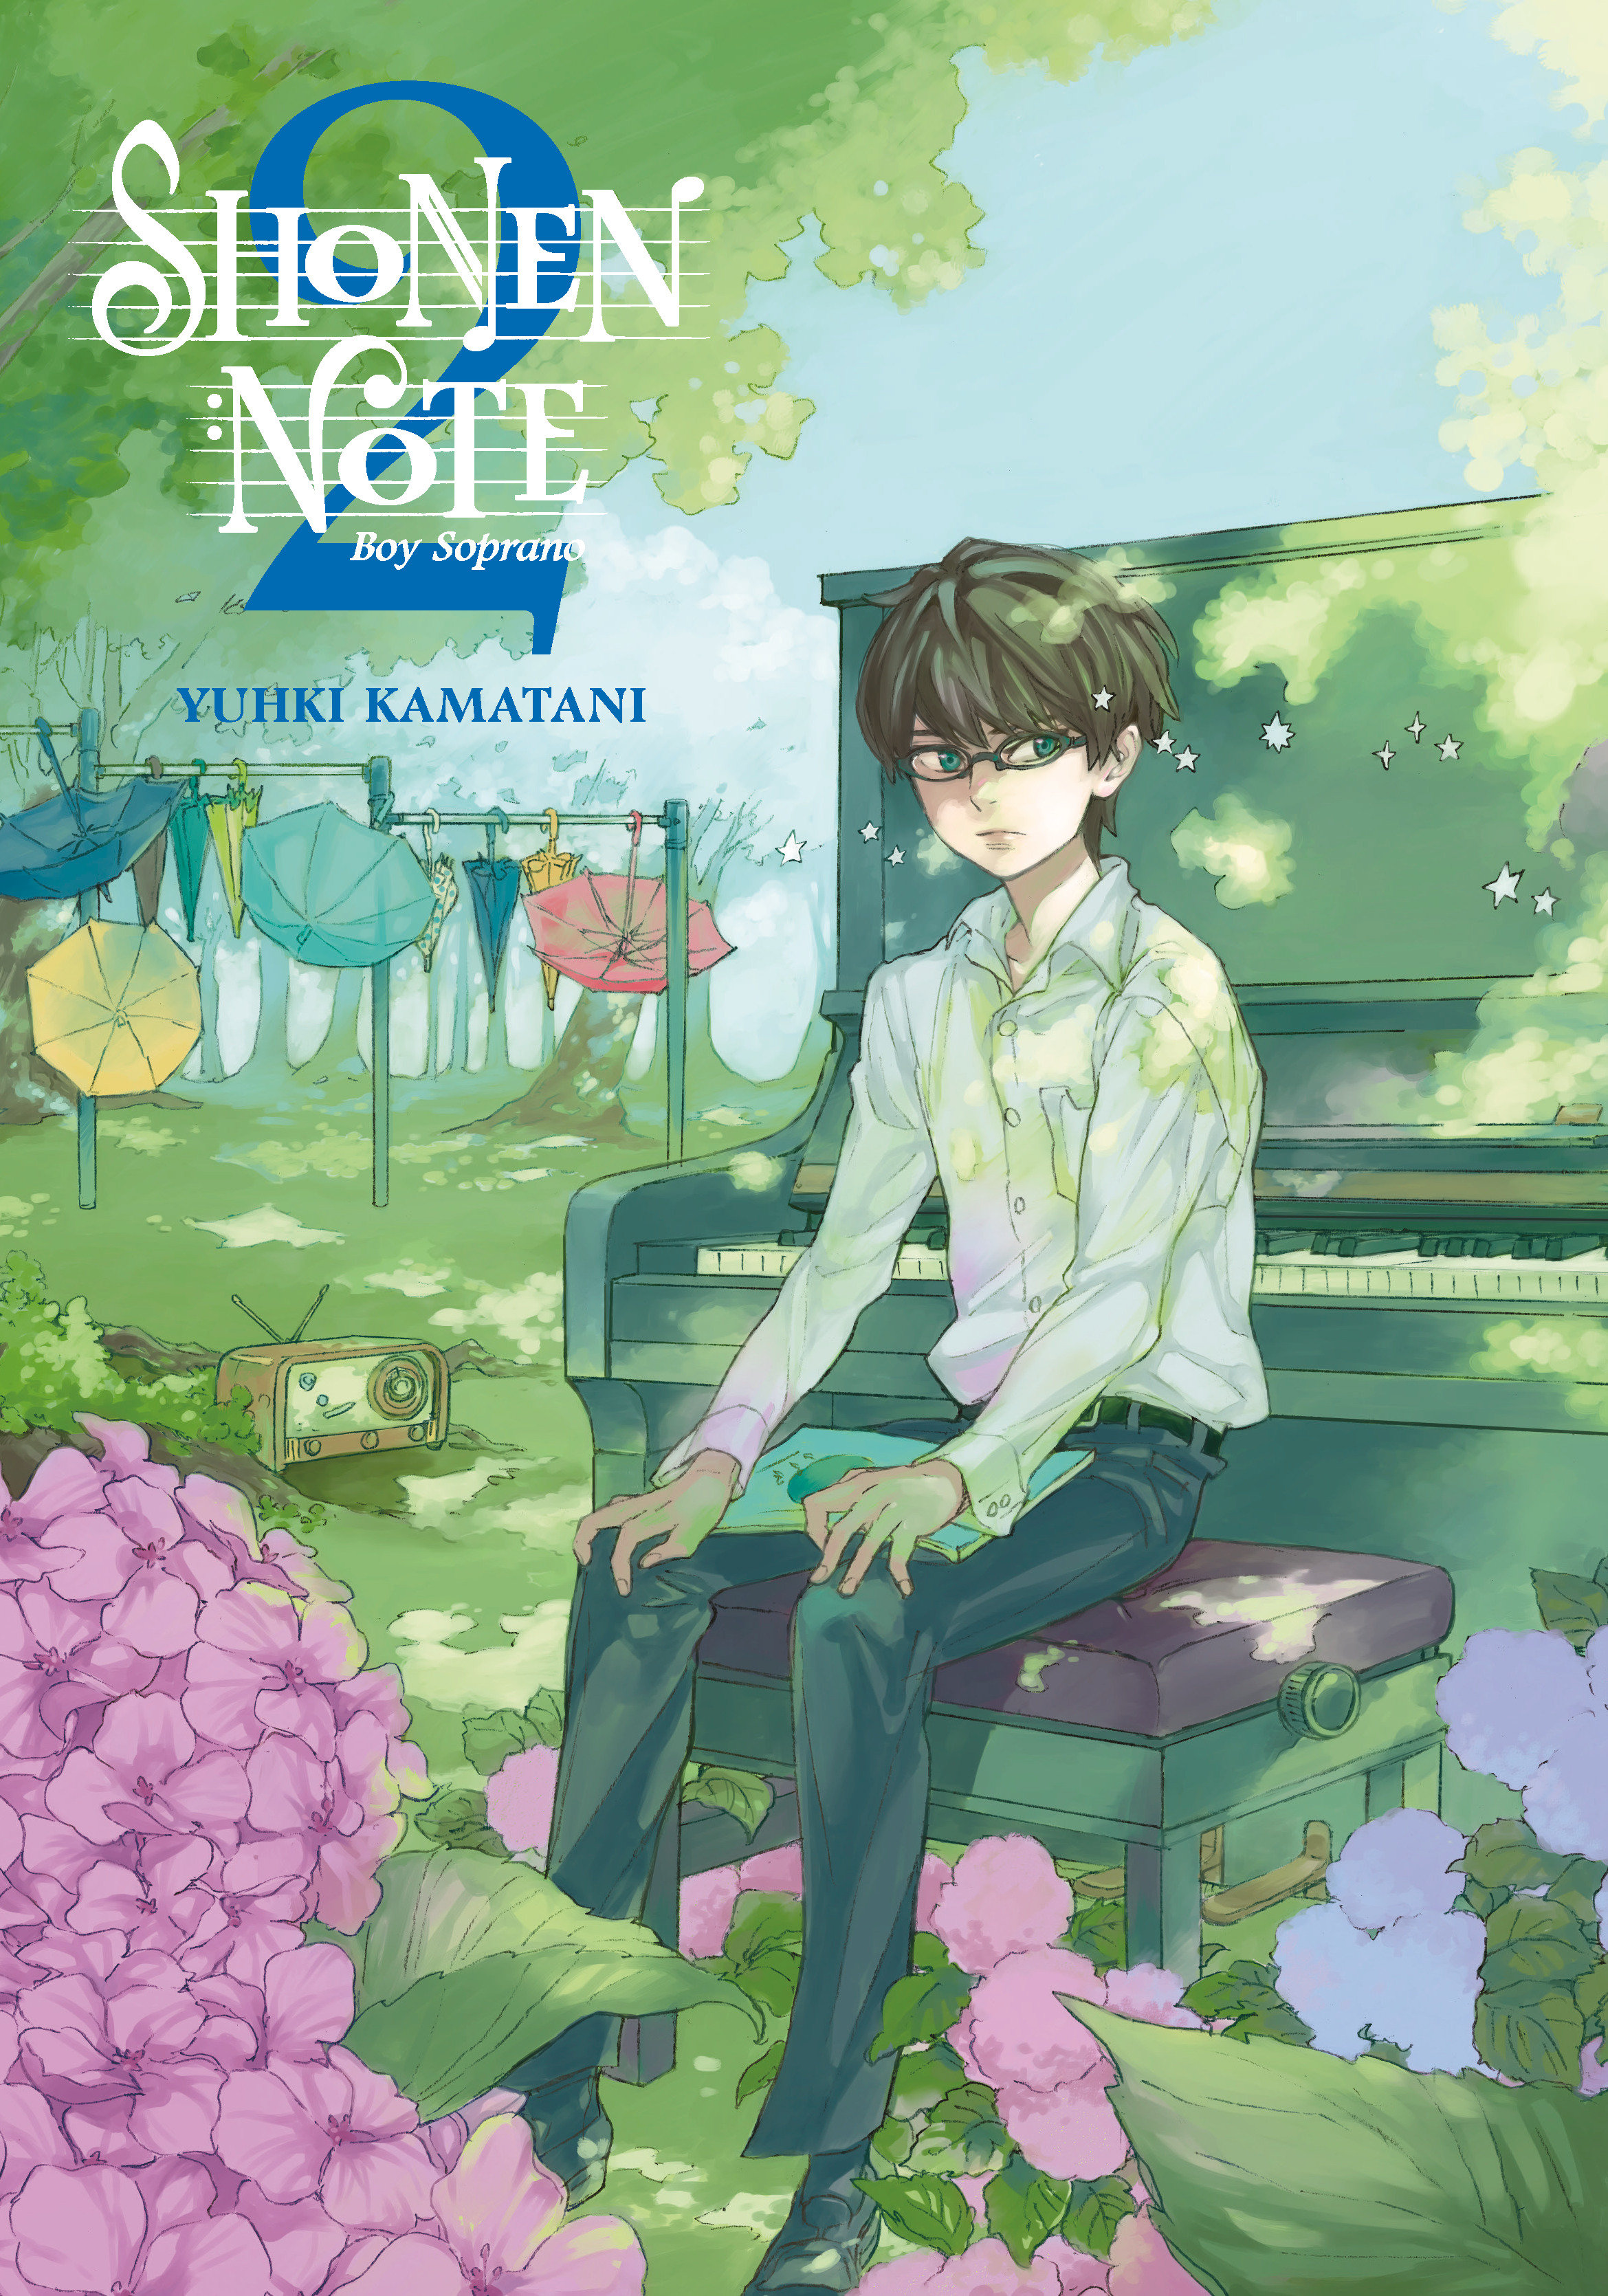 Shonen Note Boy Soprano Manga Volume 2